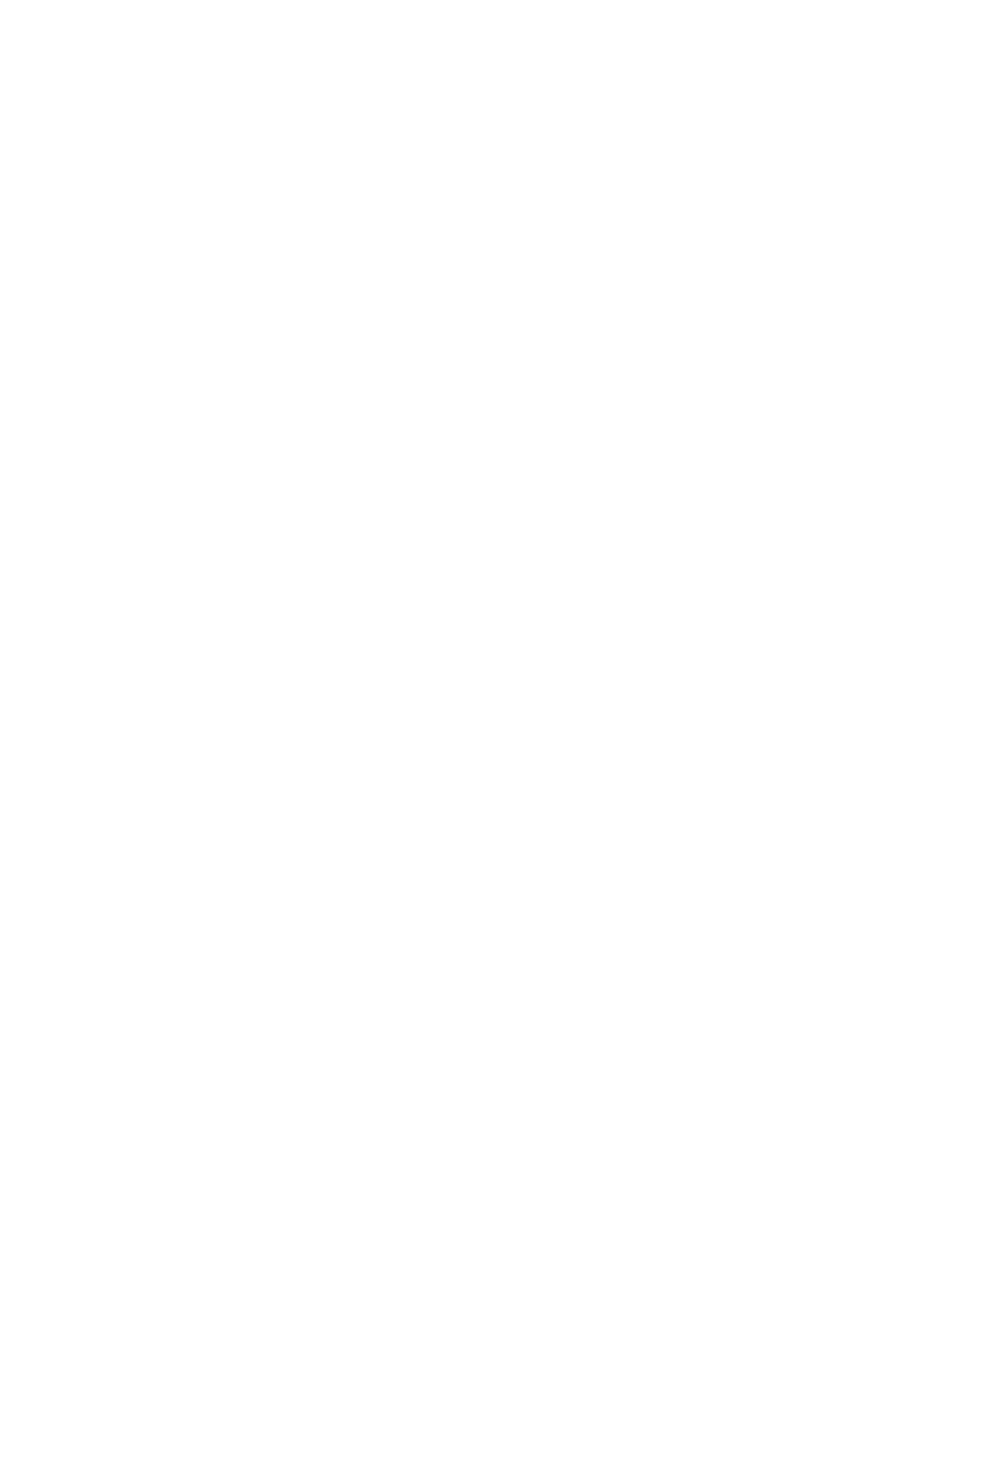 AngelList logo pour fonds sombres (PNG transparent)